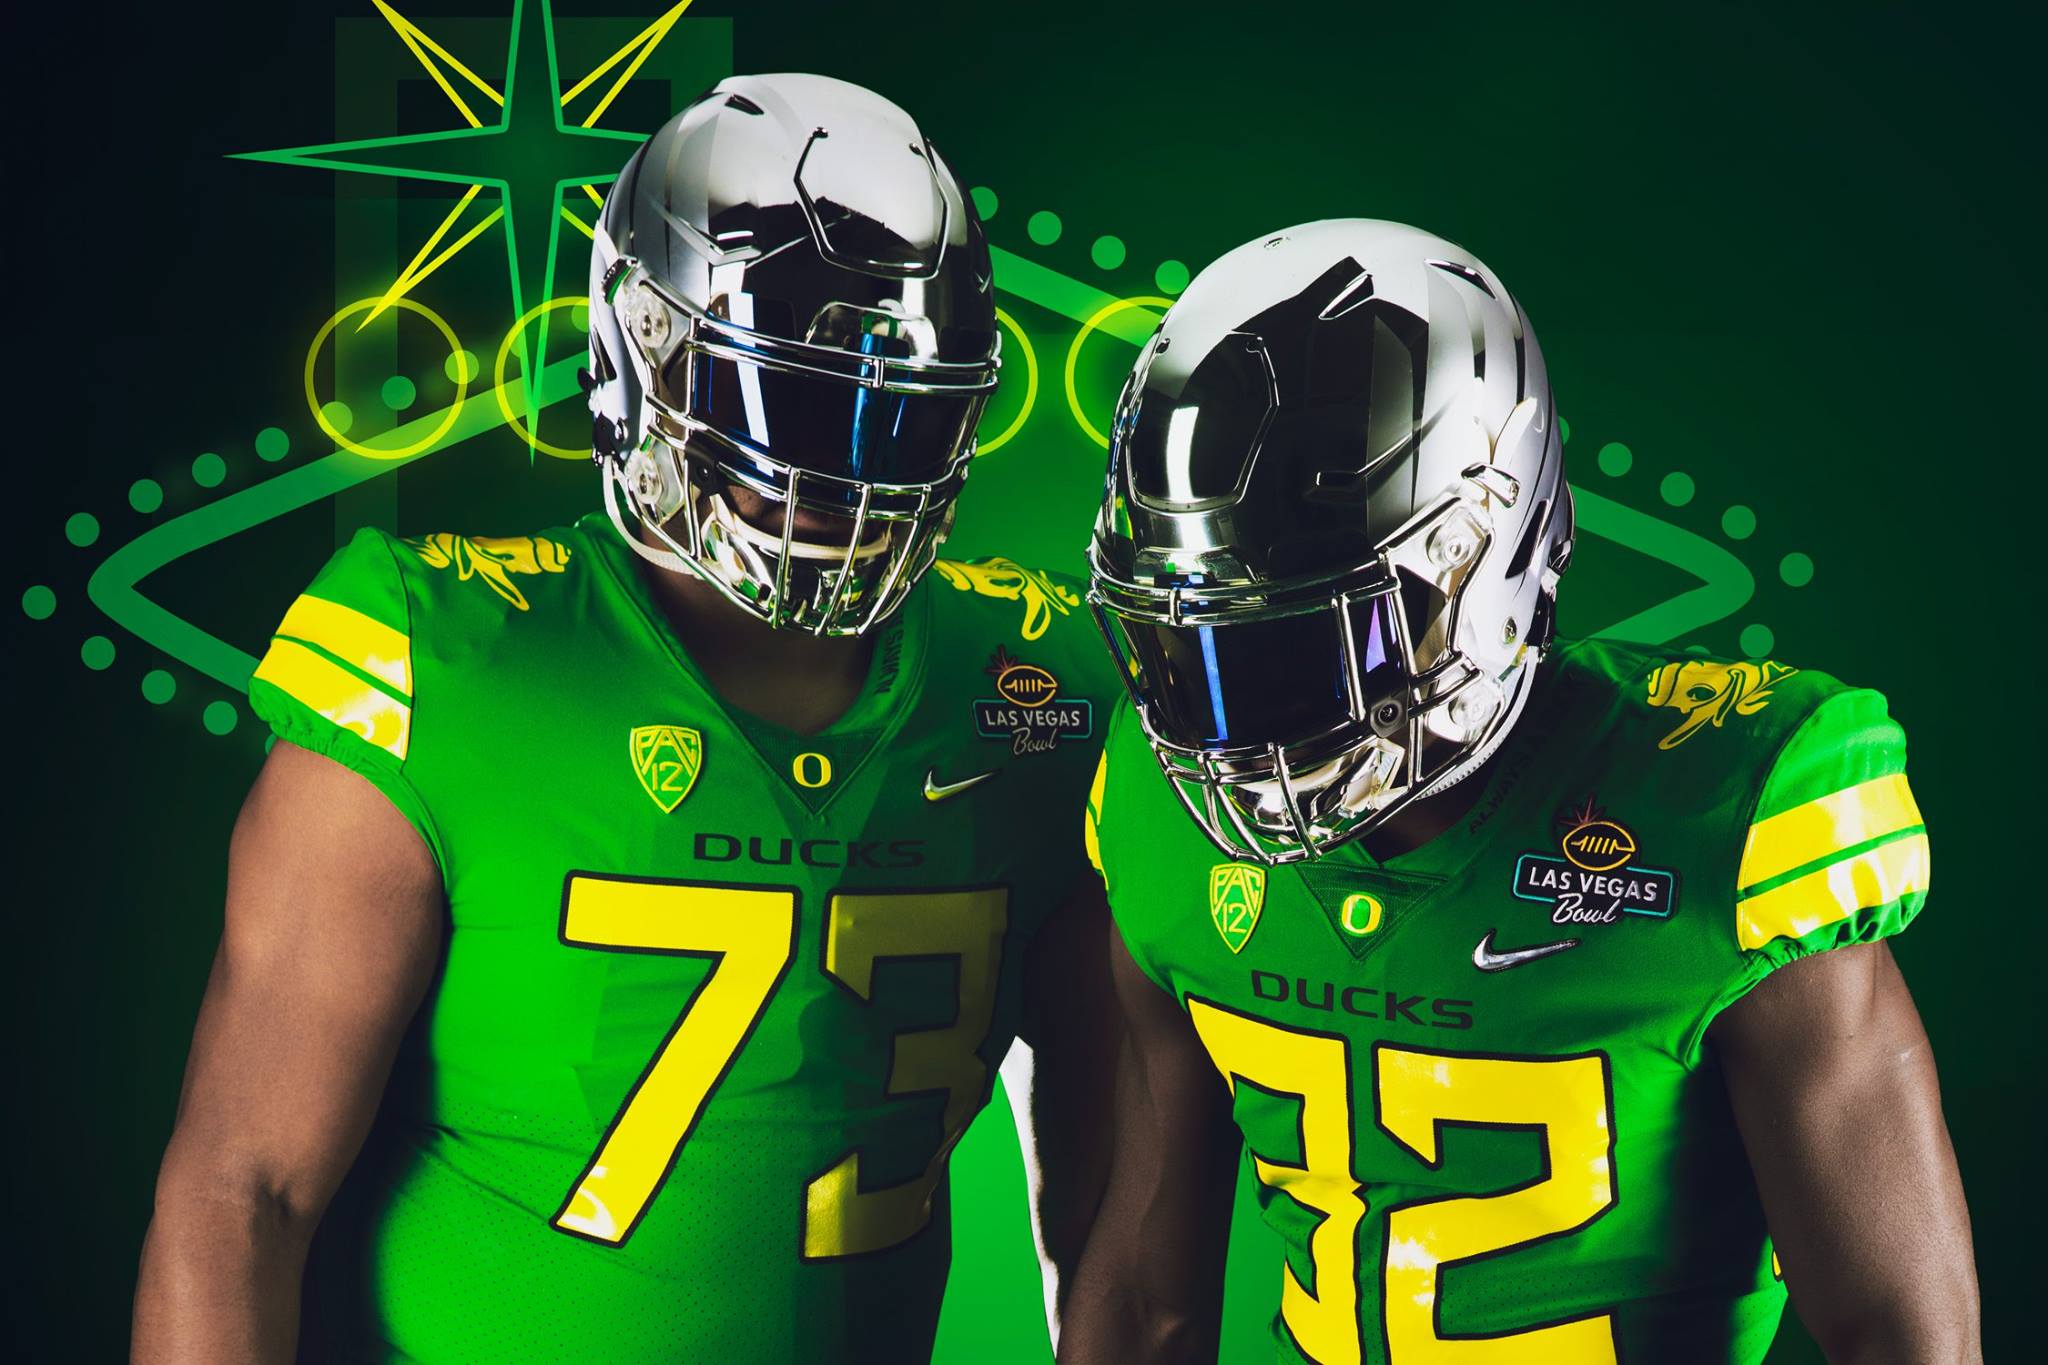 Oregon unveils Duck uniforms for Las Vegas Bowl | KVAL